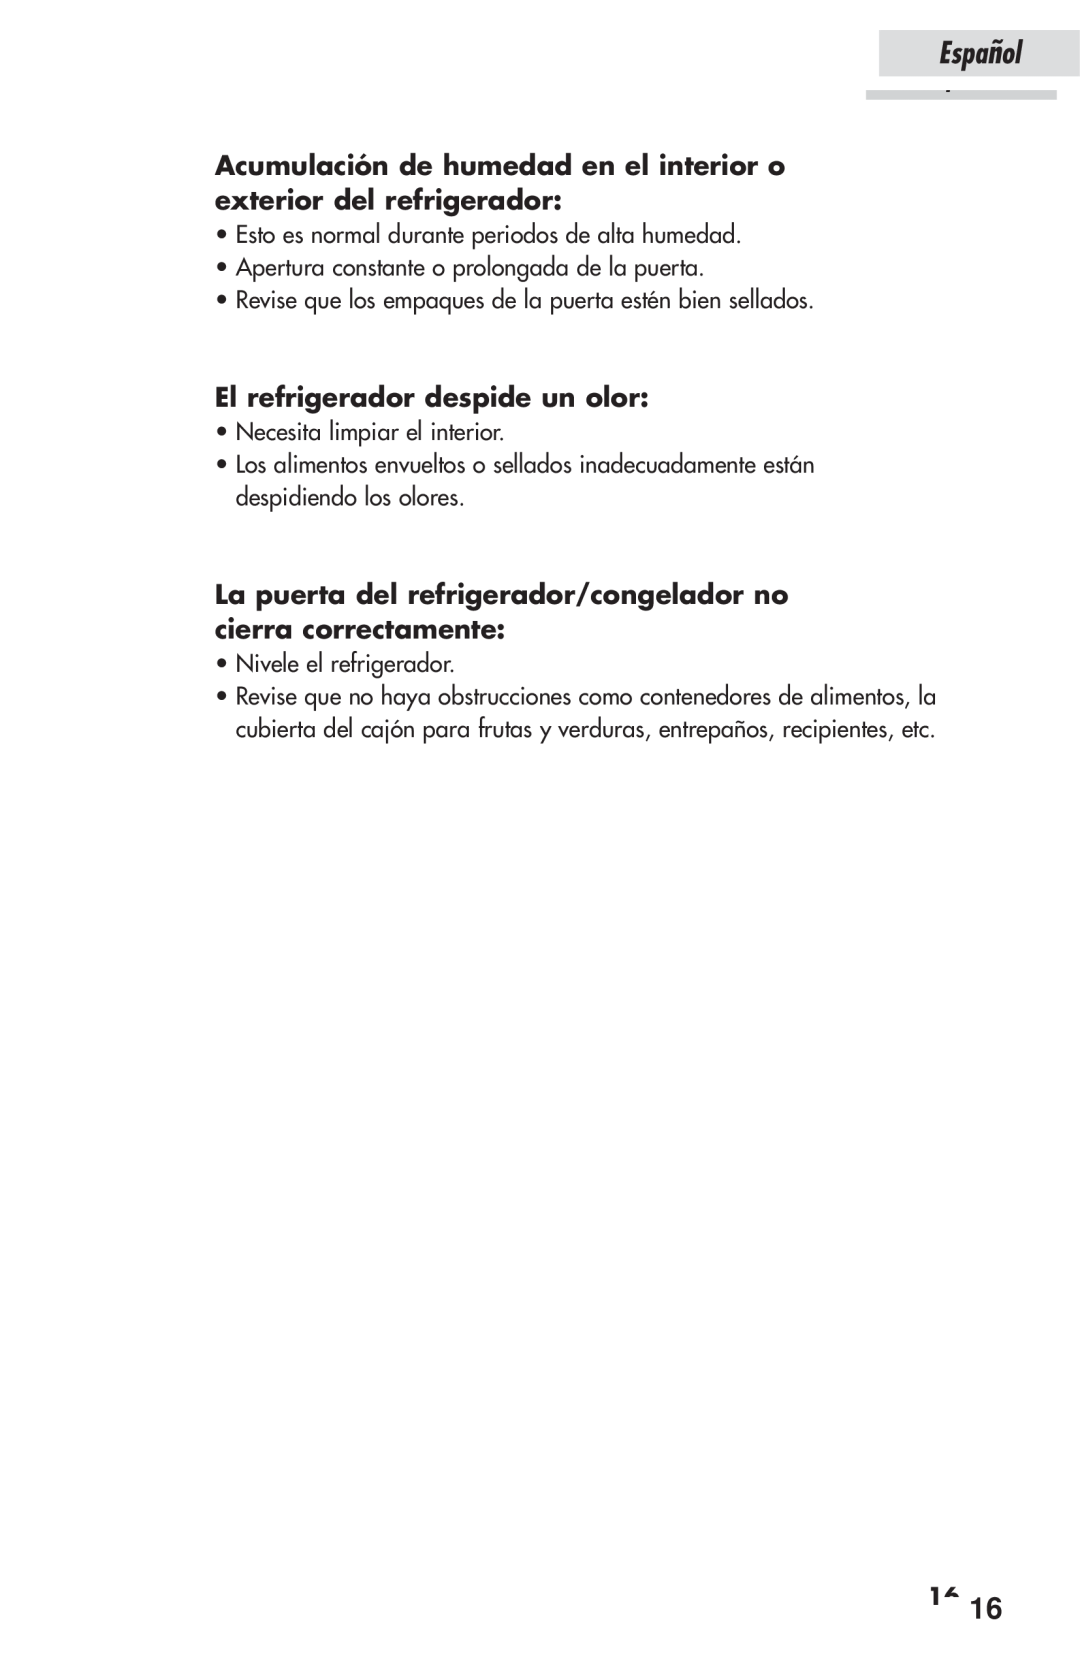 Haier HSP03WNAWW user manual El refrigerador despide un olor, Español, 1616 